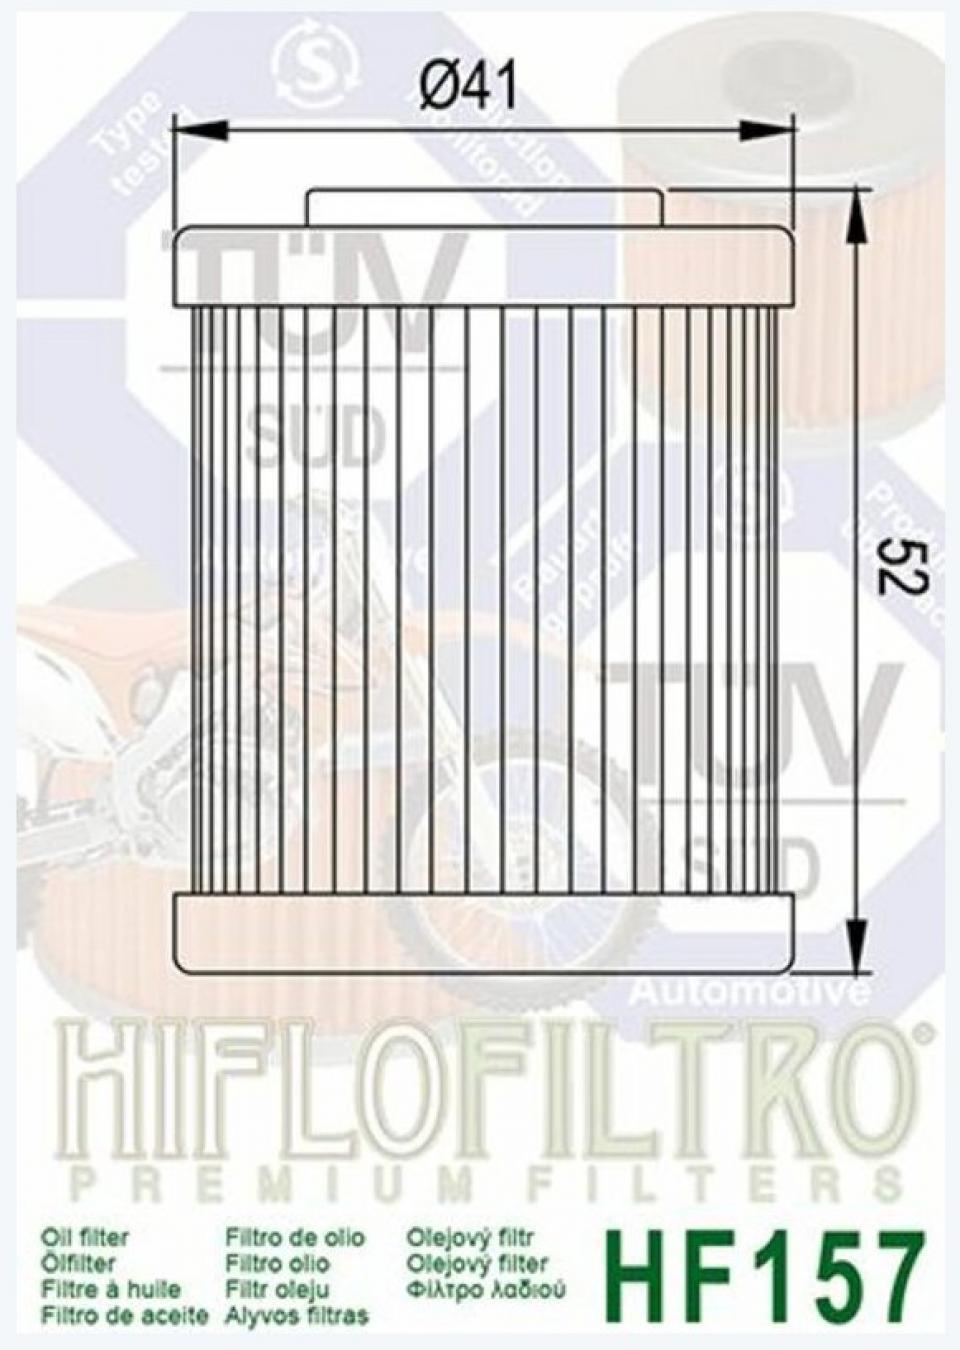 Filtre à huile Hiflo Filtro pour Quad Polaris 525 Outlaw S 2008-2011 Neuf